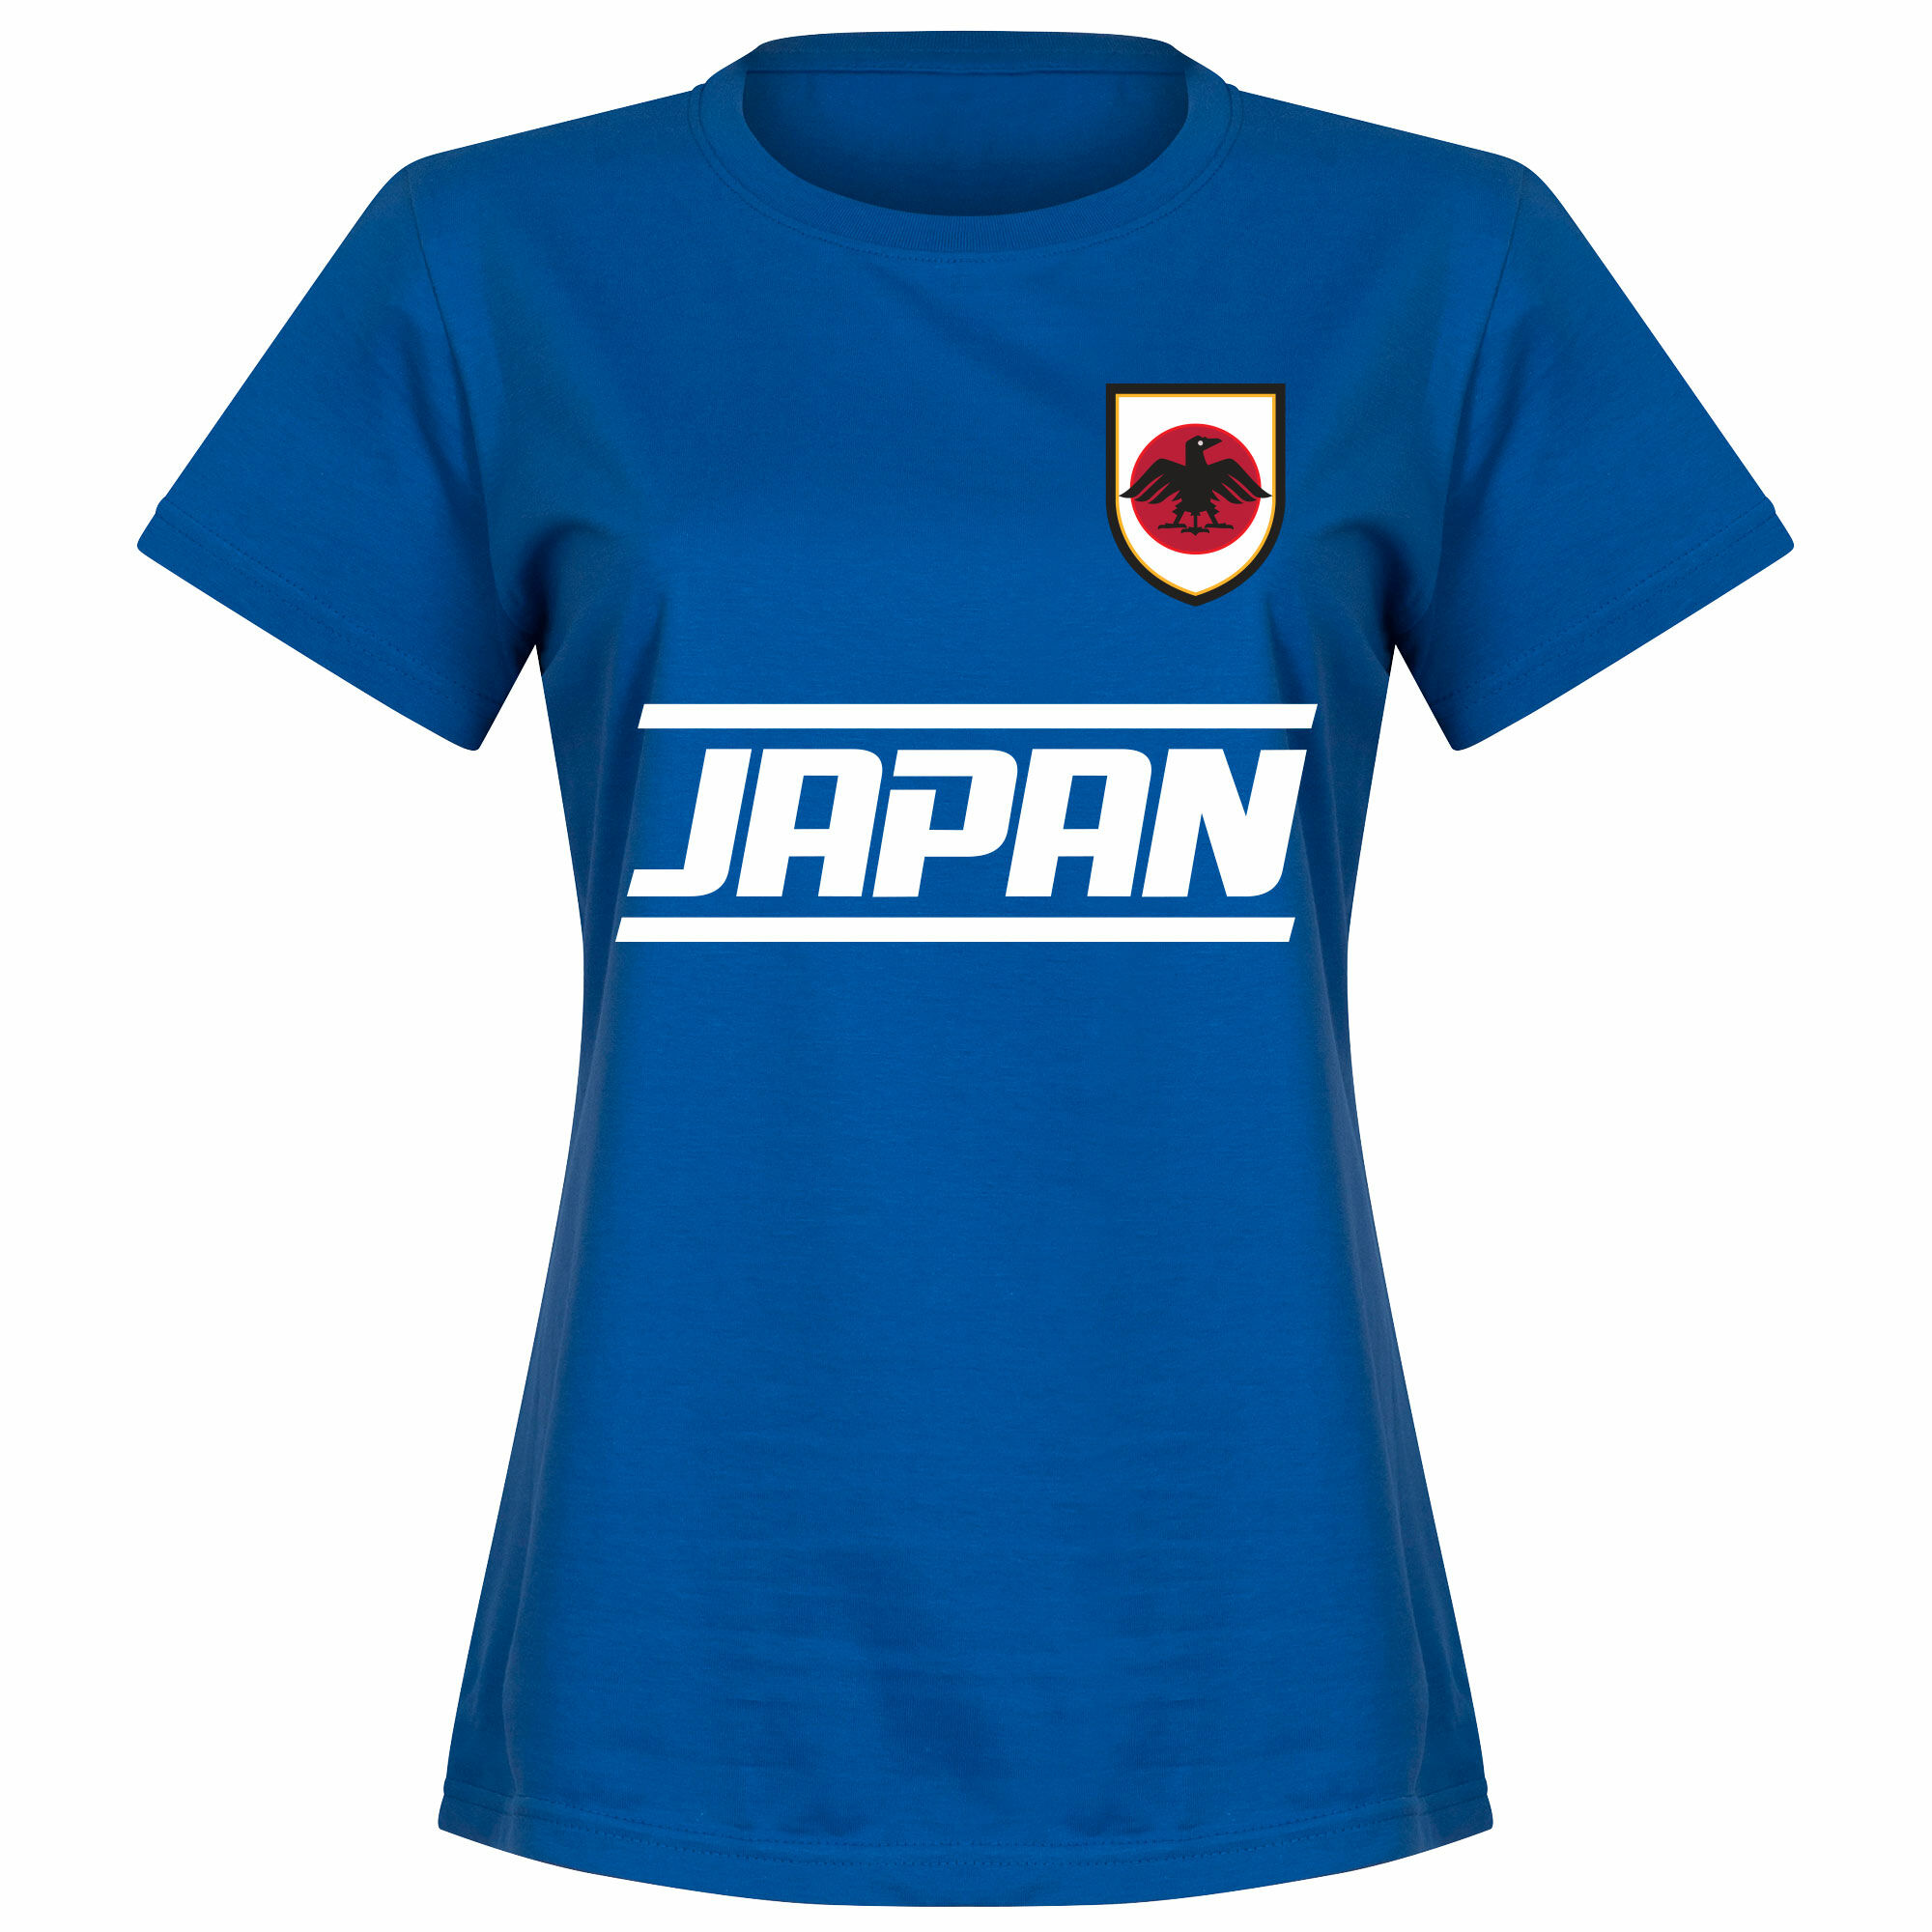 Japonsko - Tričko dámské - modré